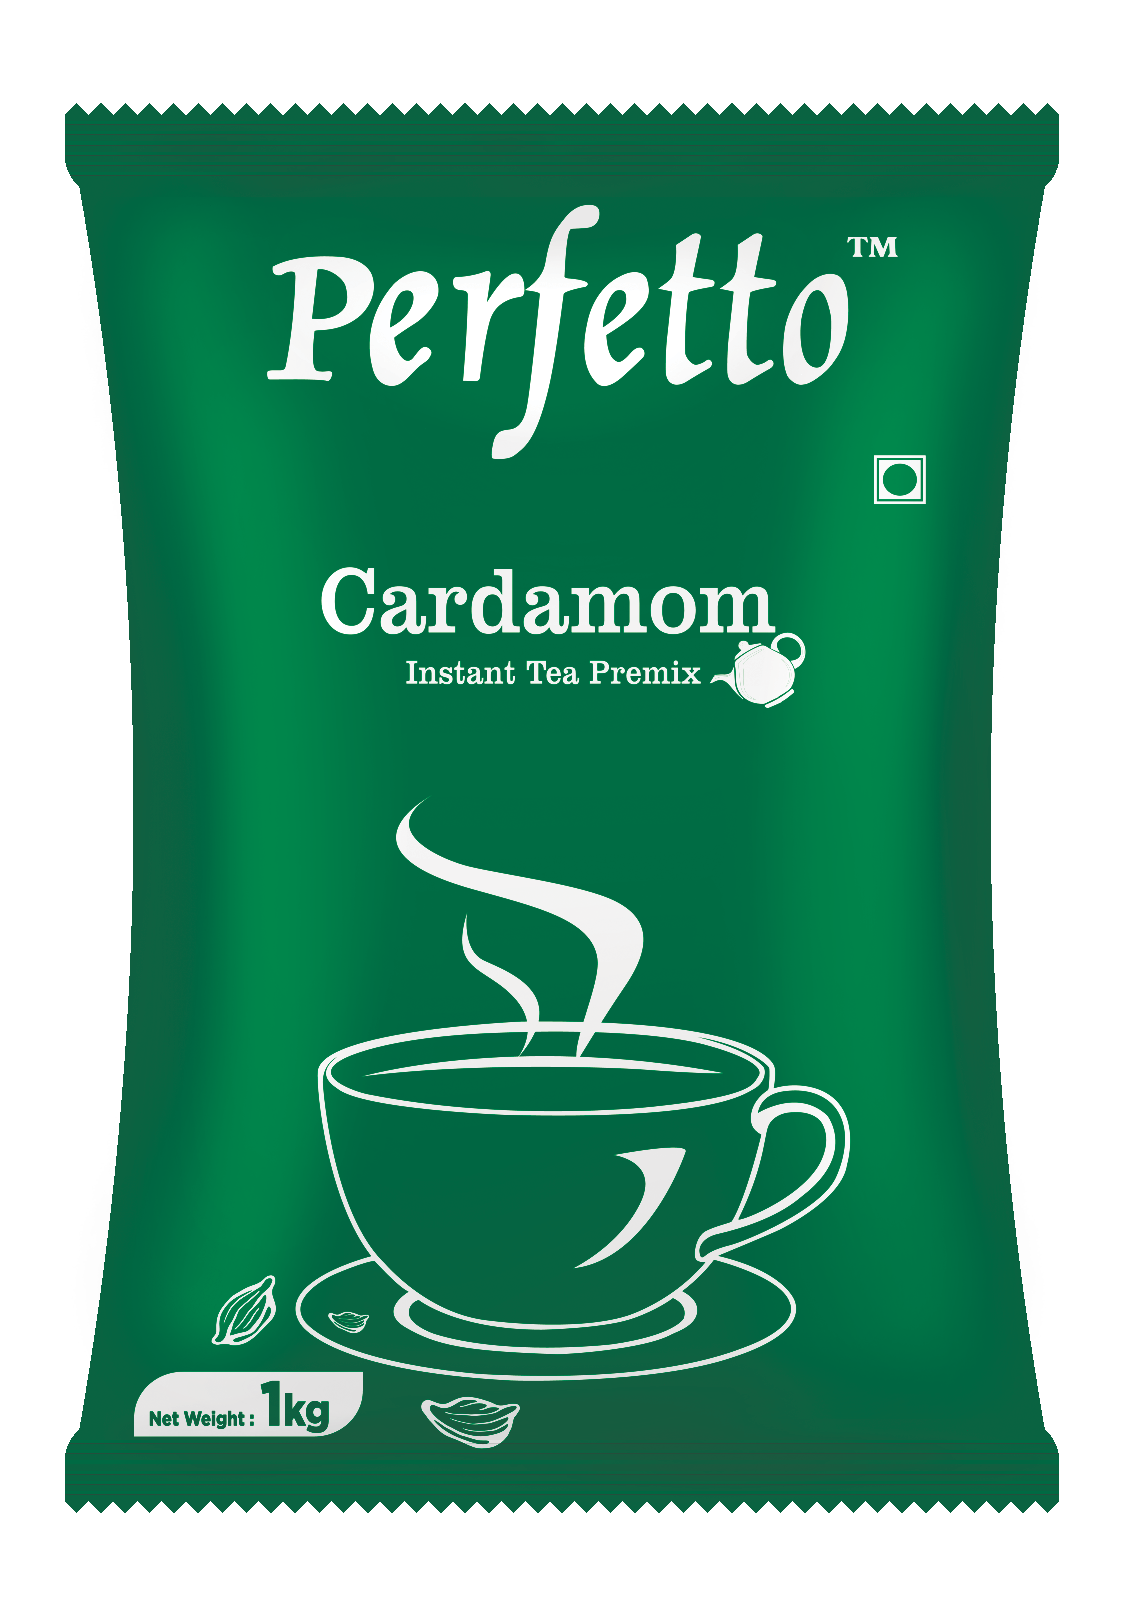 Perfetto 3 in 1 Cardamom Tea Premix Pouch